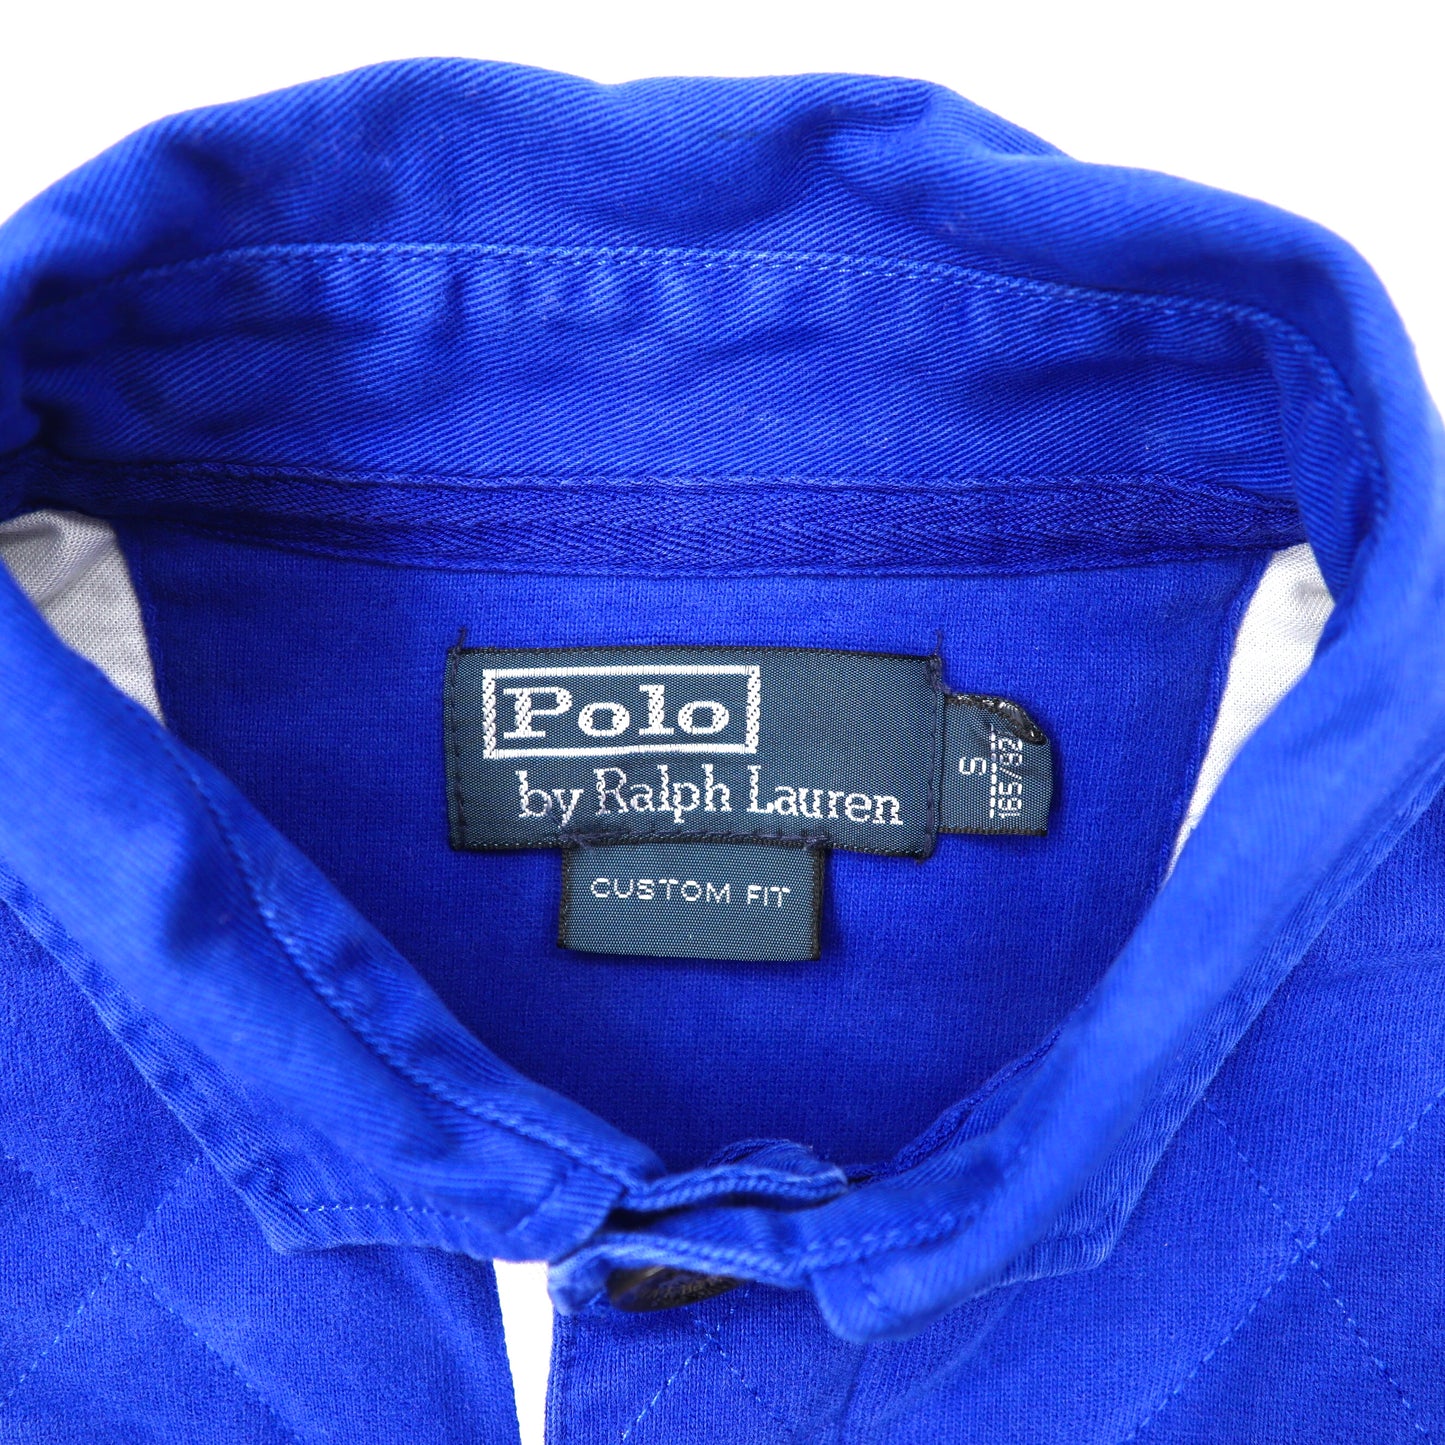 Polo by Ralph Lauren ラガーシャツ S ブルー コットン ビッグポニー刺繍 ESPANA